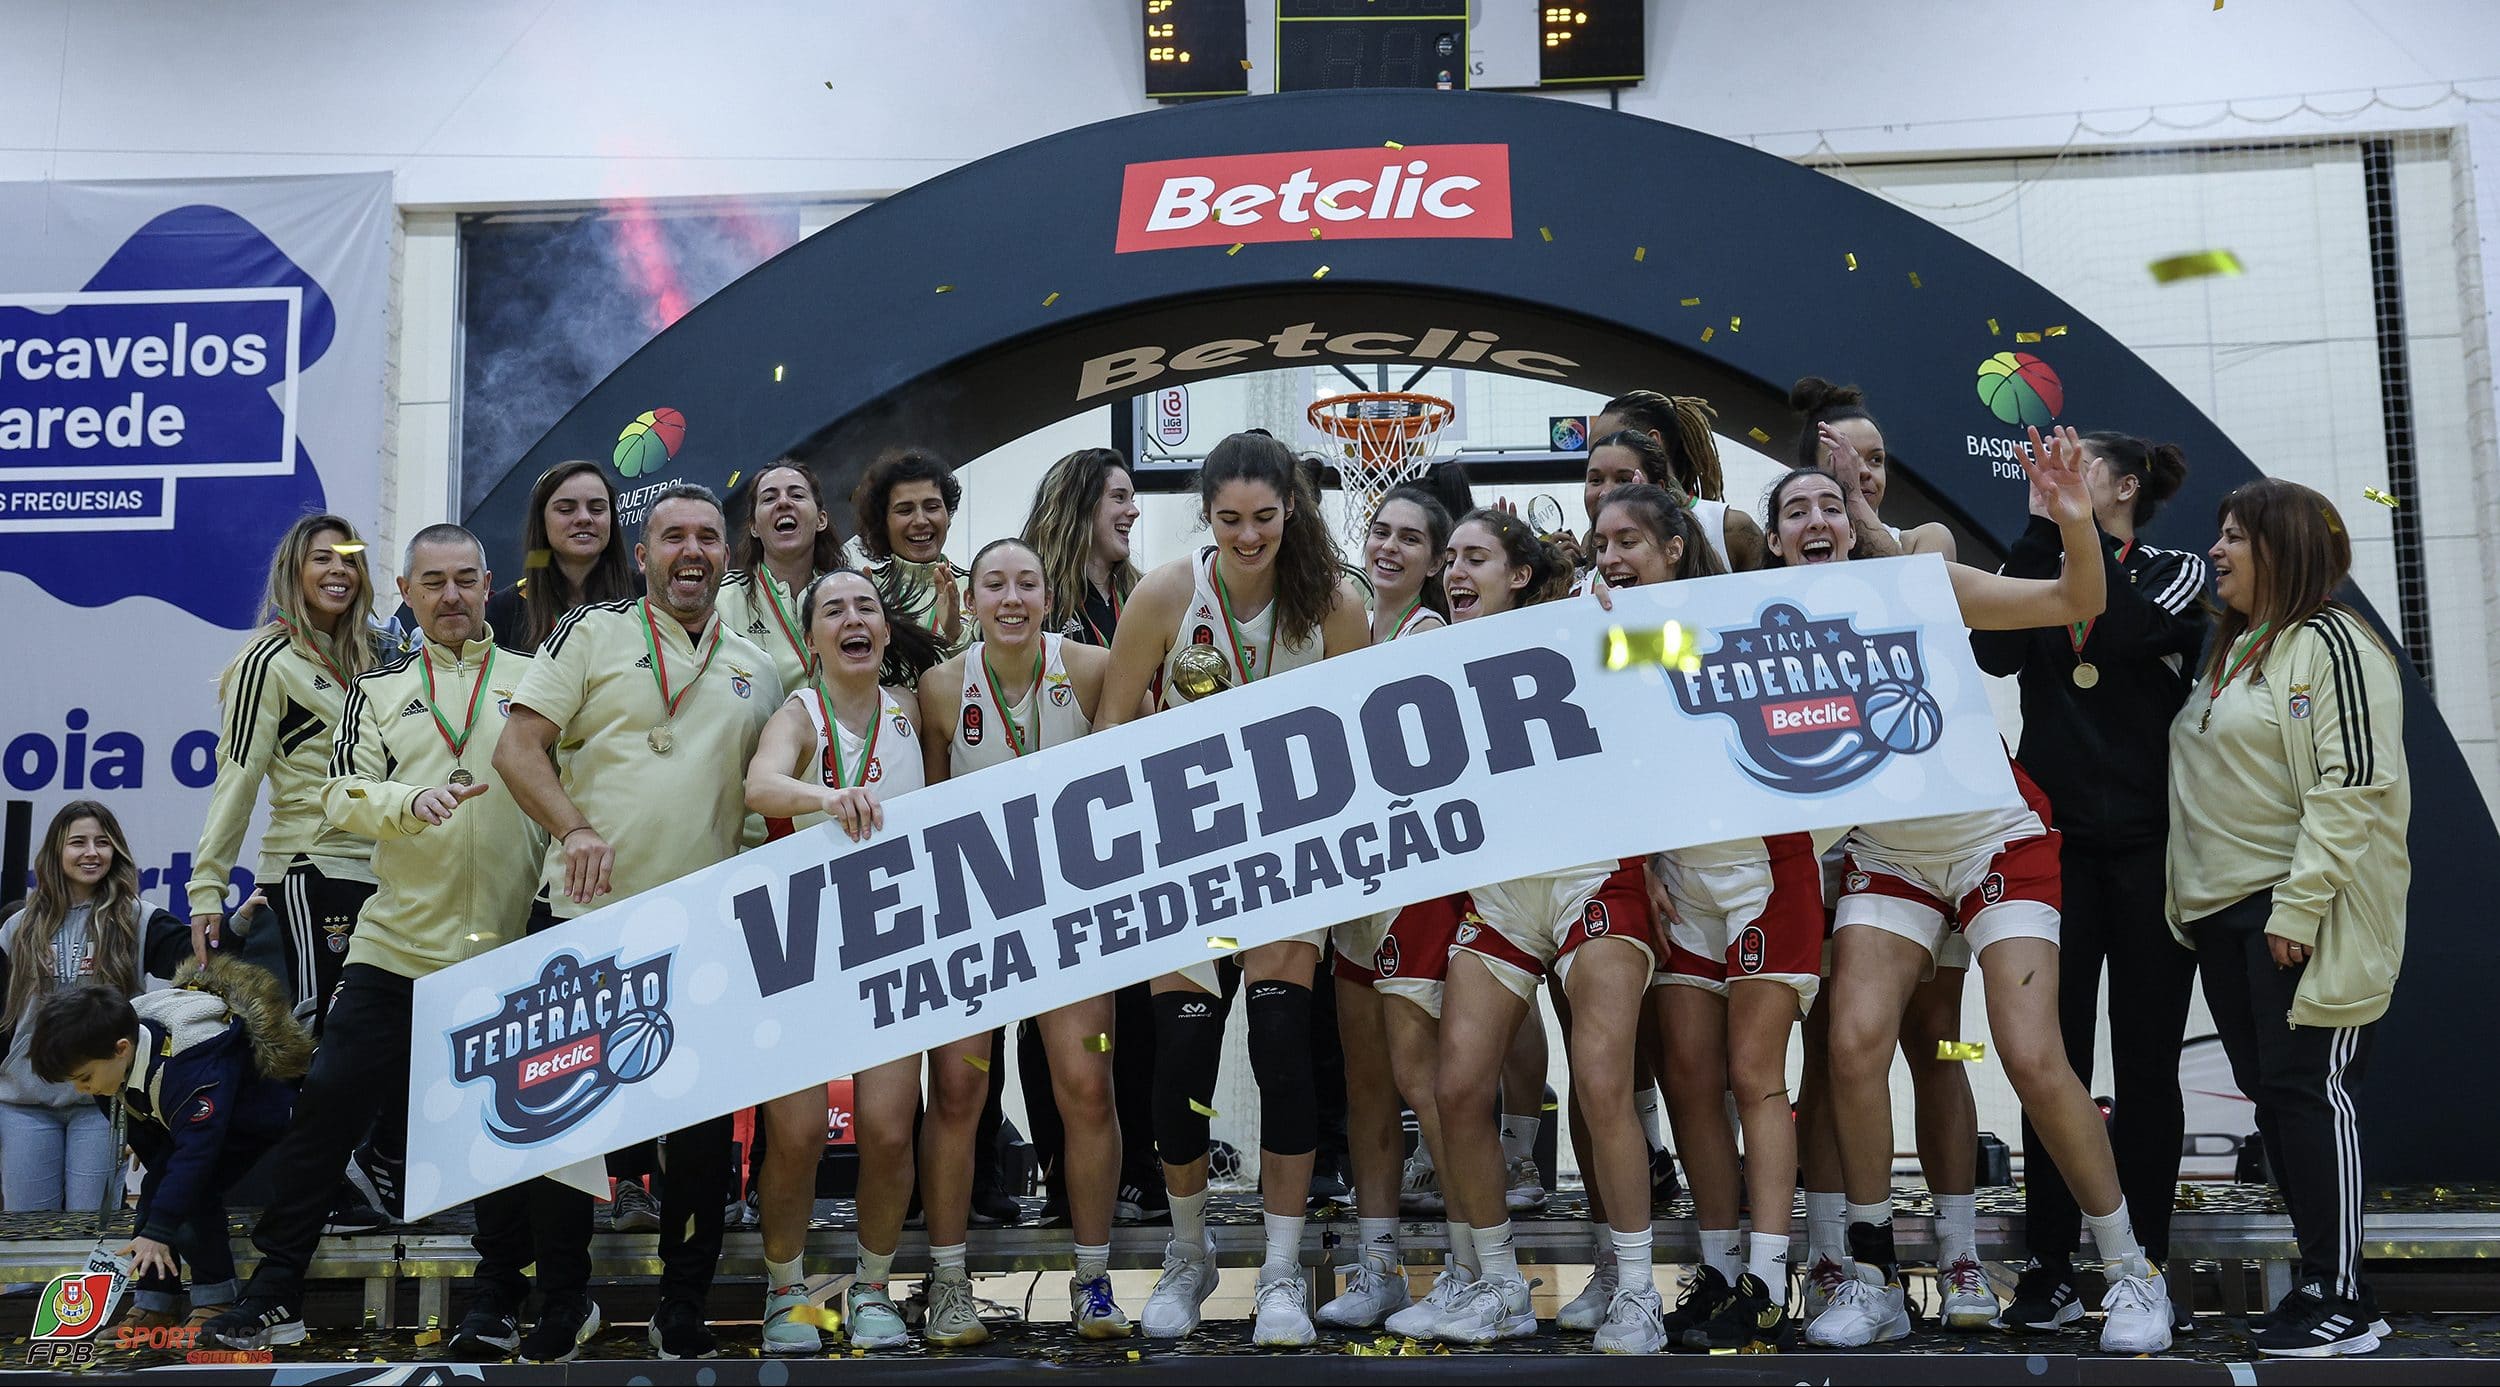 Clube de Basquete de Viana conquista vitória nos Açores para o campeonato